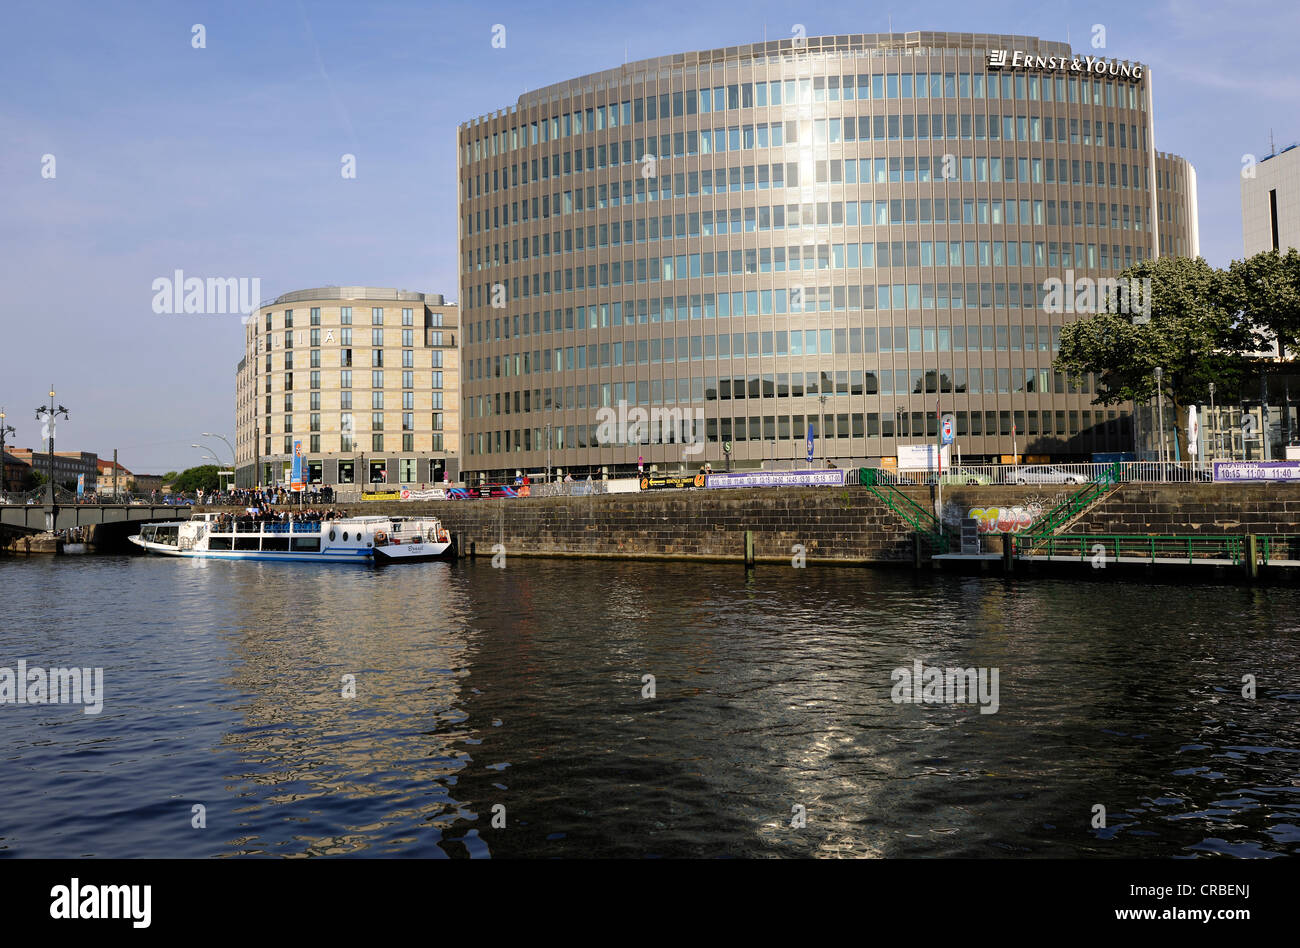 Ernst & Young conti GmbH, Melia Hotel, Friedrichstrasse, vicino al Reichstag riva del fiume Spree, con gite in barca, Berlino Foto Stock